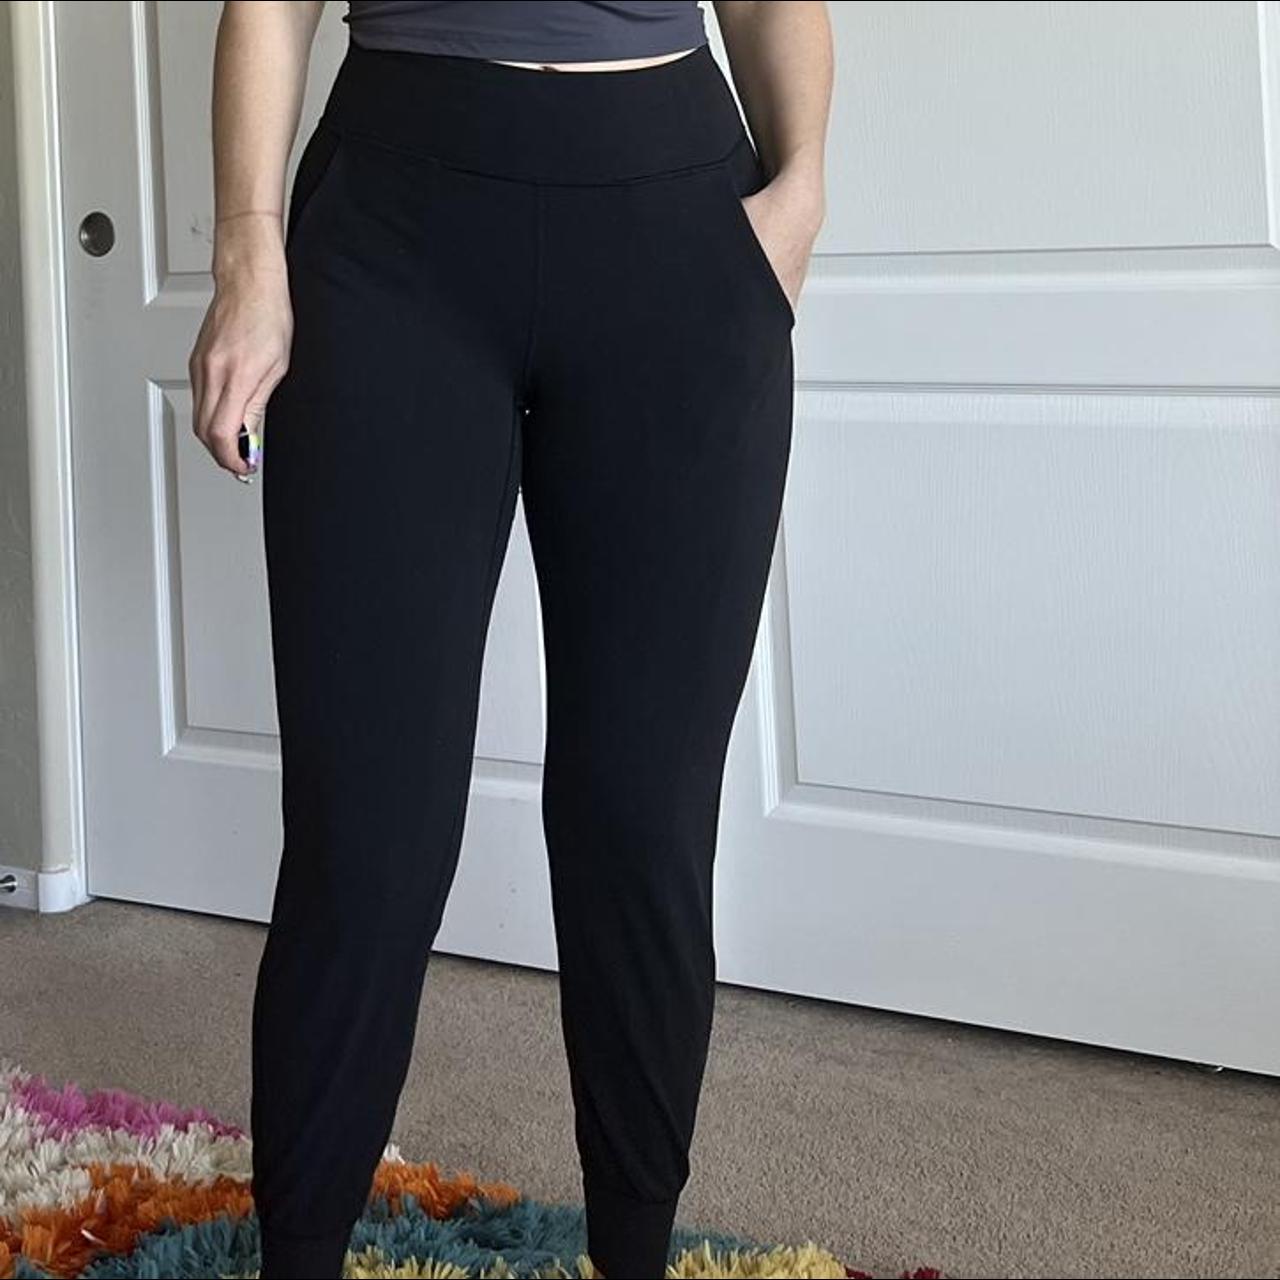 Lululemon jogger leggings Black leggings with - Depop